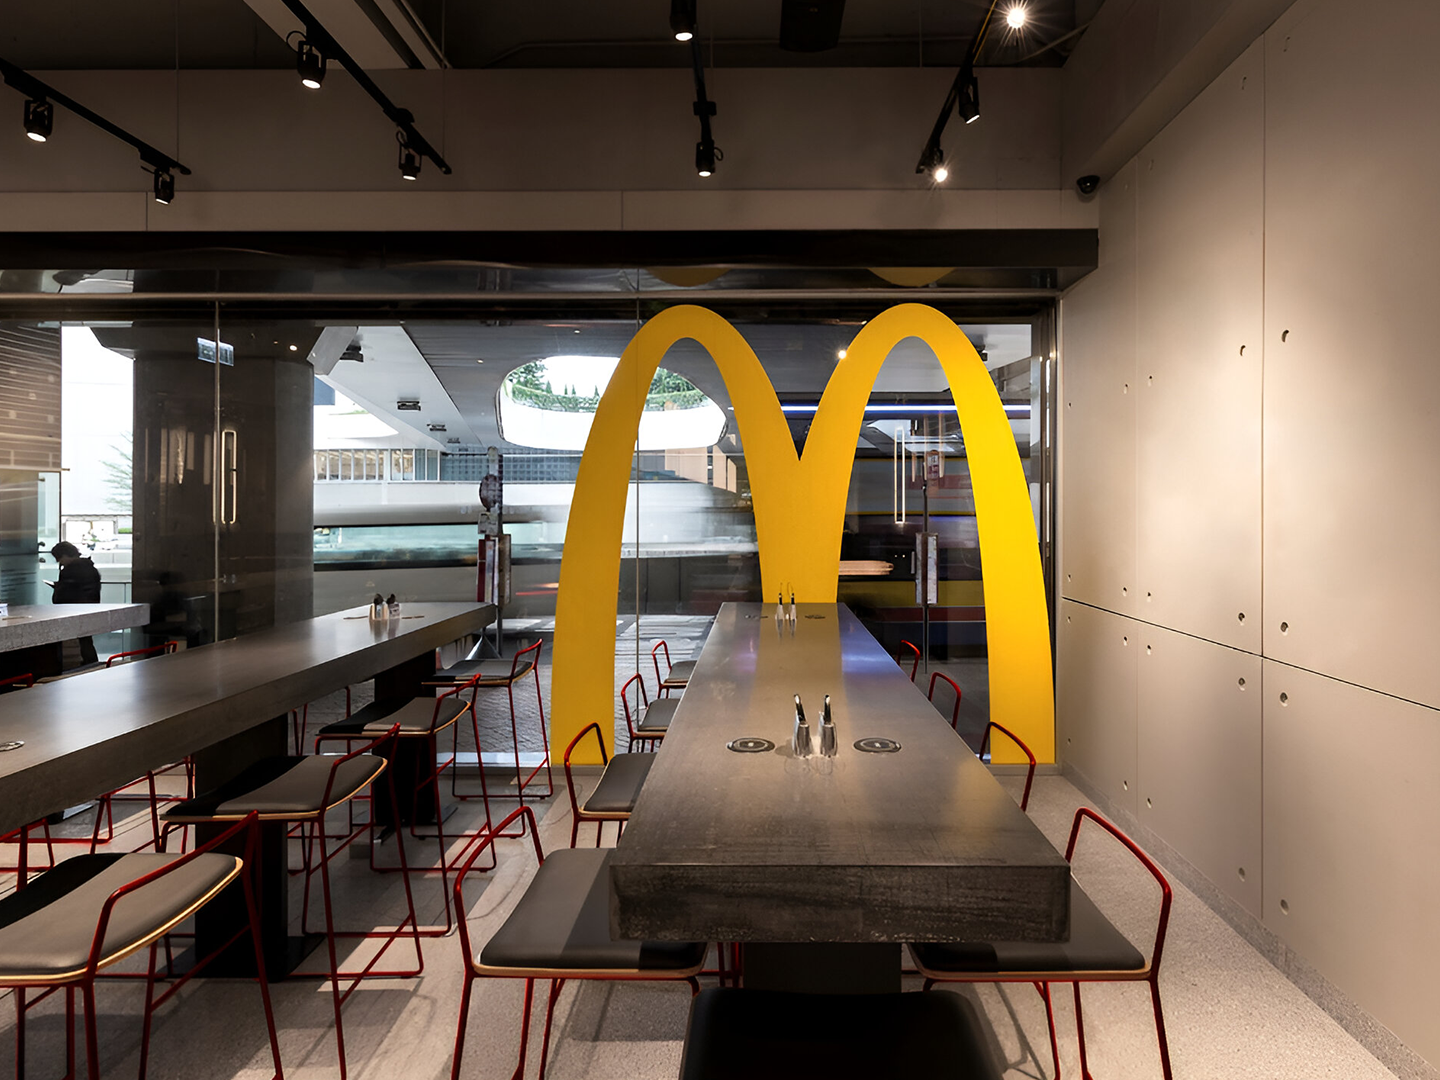 Conception de restaurant - Meubles de restaurant sur mesure - McDonald's Ray - Luminaires adaptés - Meubles sur mesure - Industrie de la restauration